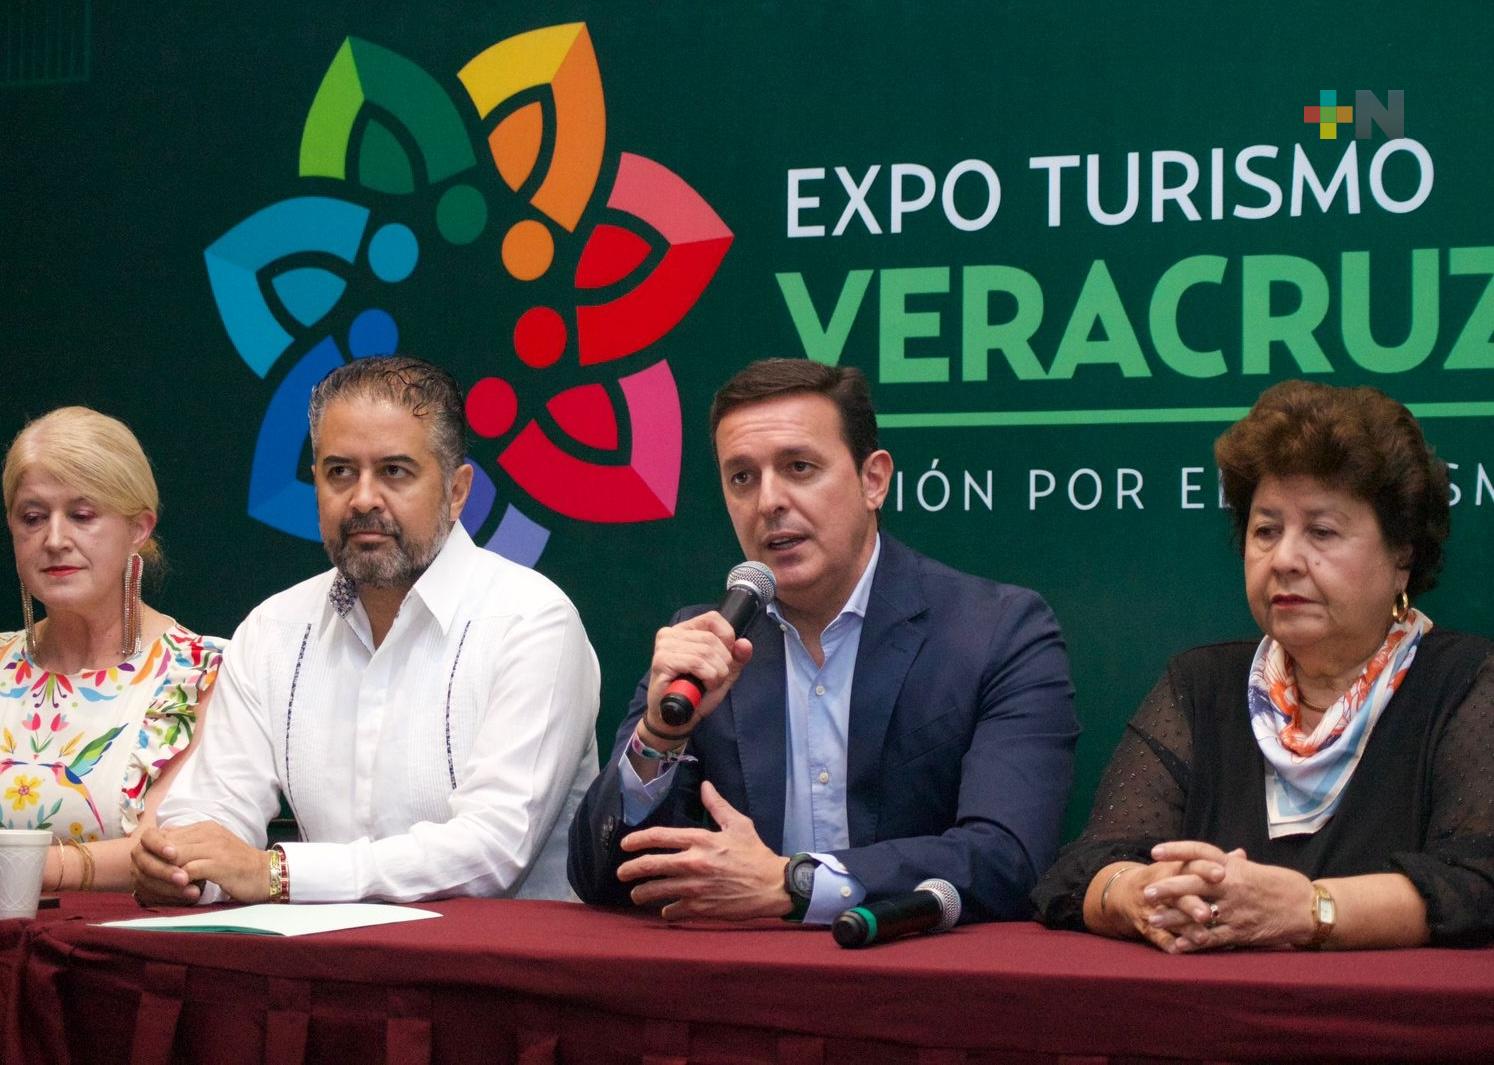 En Expo Turismo Veracruz crean la Red Iberoamericana de Municipios y Territorios Turísticos